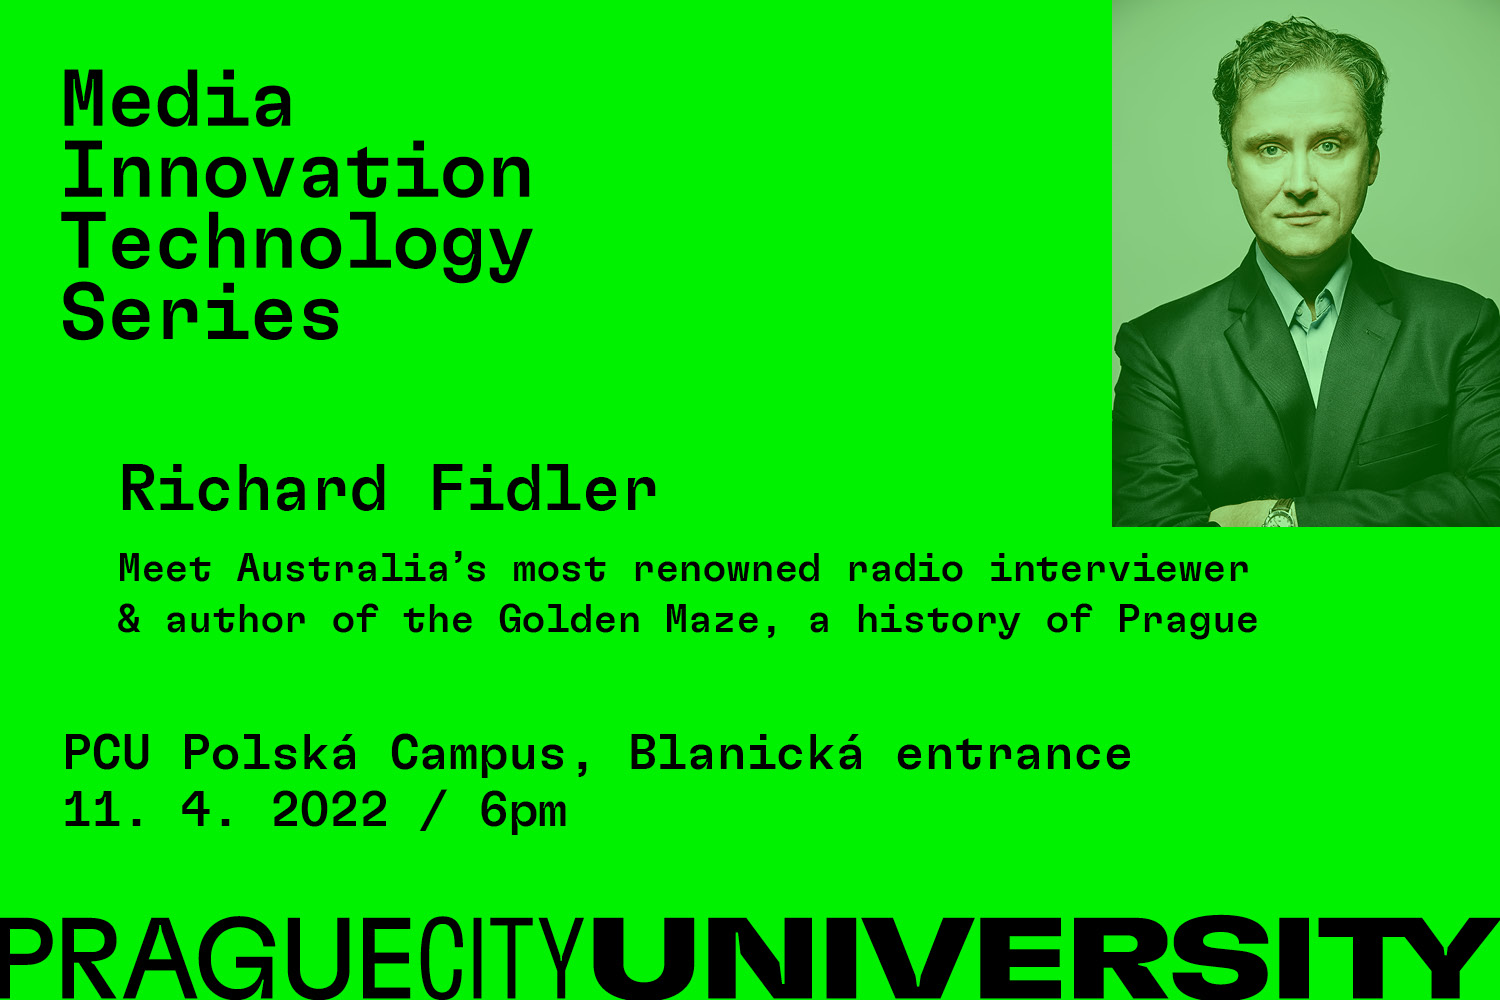 Media Innovation Technology Series Richard Fidler